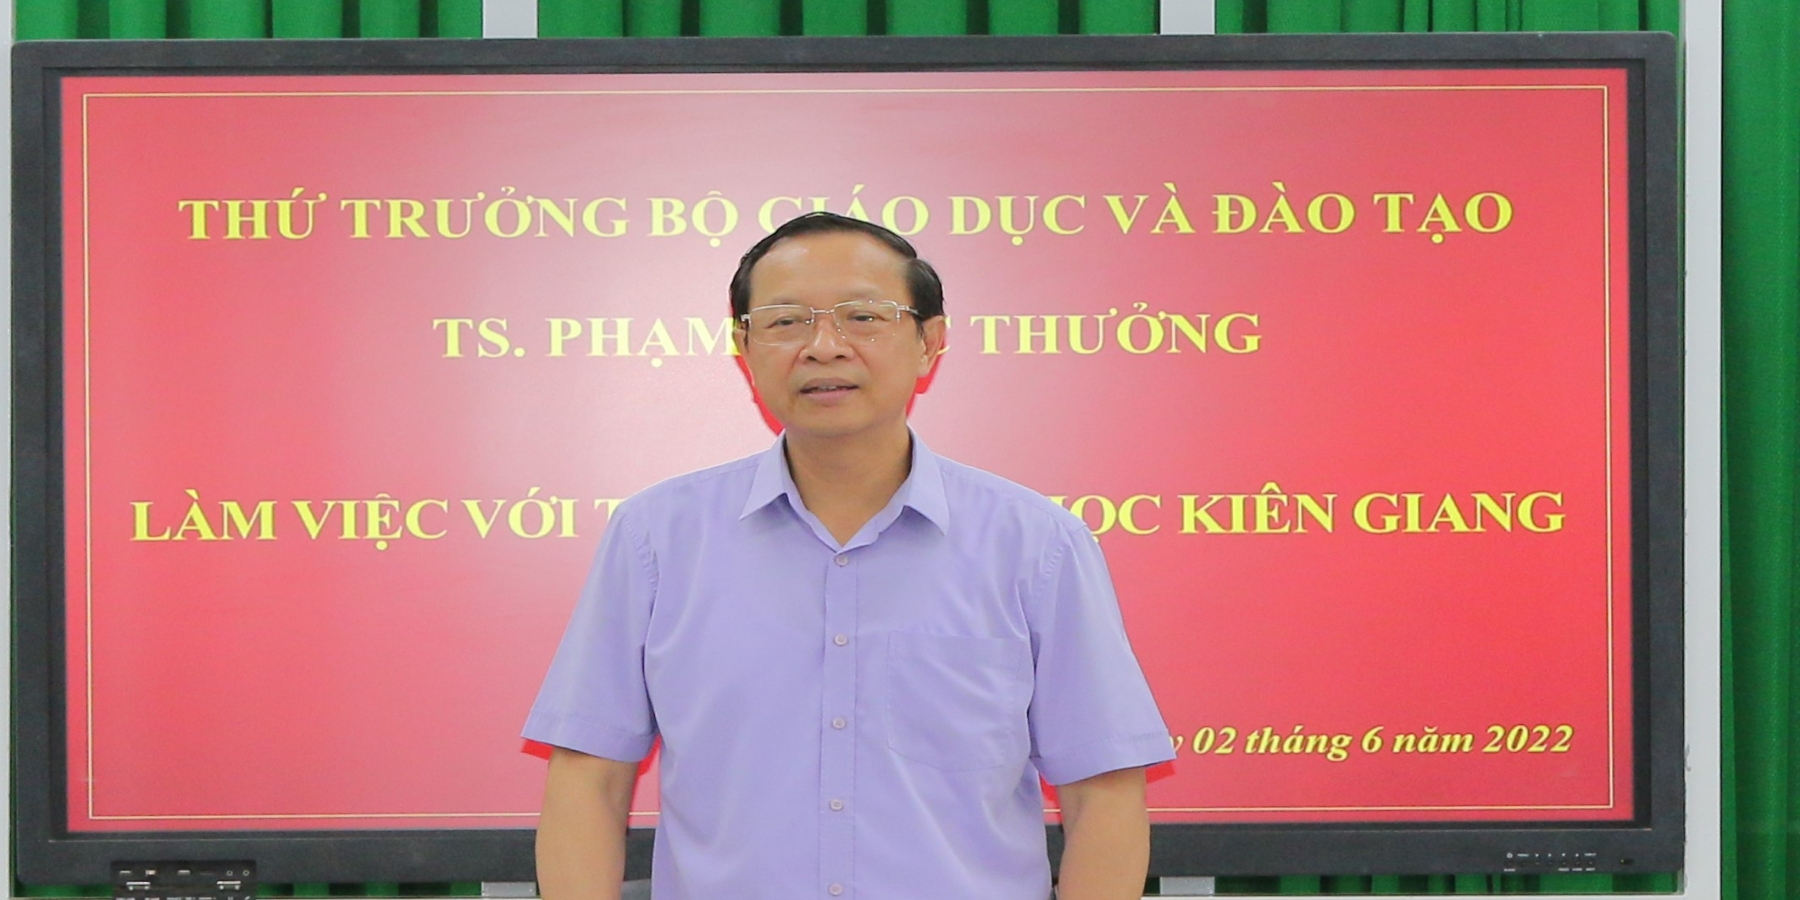 Thứ trưởng Bộ Giáo dục và Đào tạo Phạm Ngọc Thưởng đến làm việc tại Trường Đại học Kiên Giang